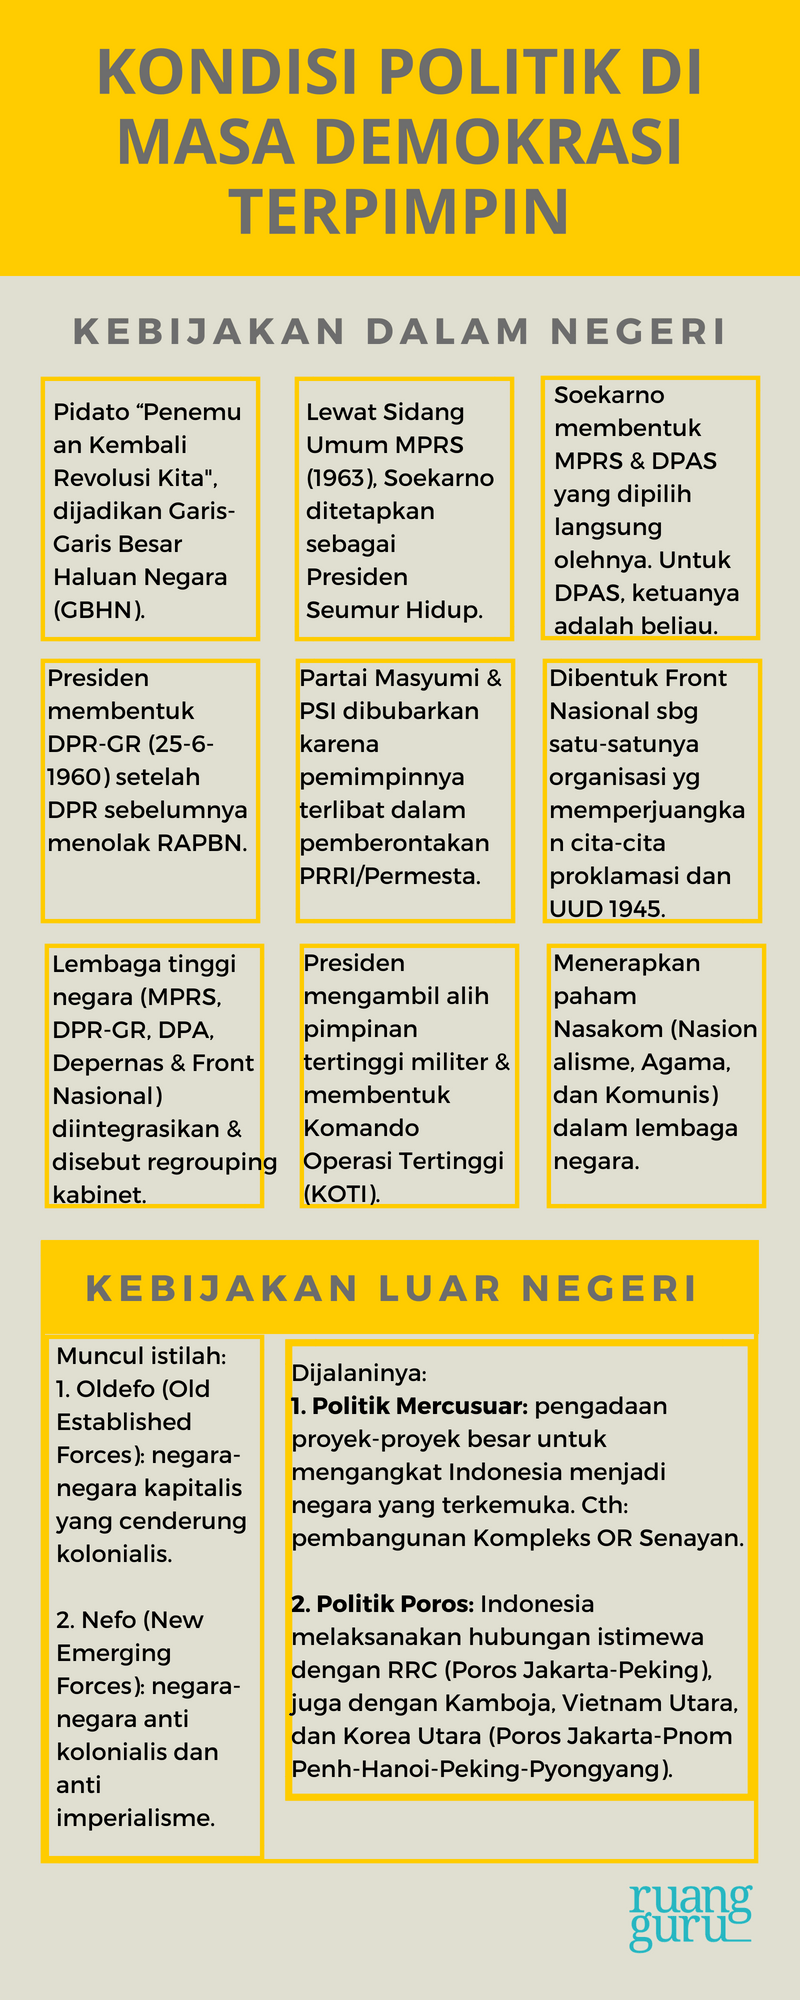 KONDISI POLITIK INDONESIA DI MASA DEMOKRASI TERPIMPIN